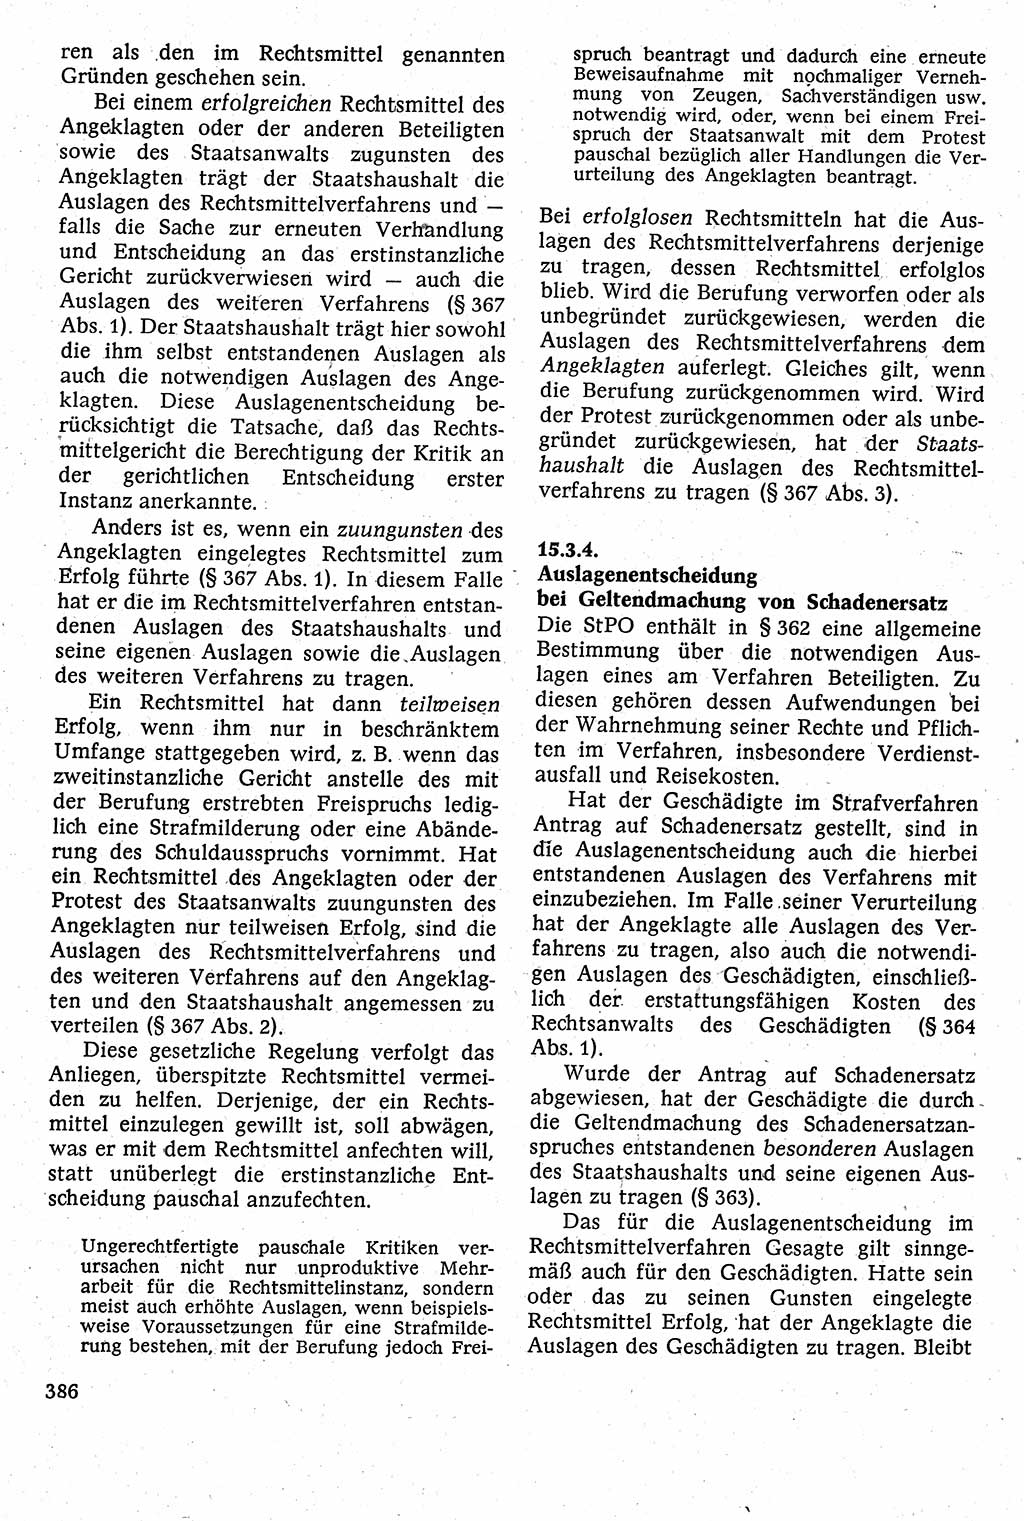 Strafverfahrensrecht [Deutsche Demokratische Republik (DDR)], Lehrbuch 1982, Seite 386 (Strafverf.-R. DDR Lb. 1982, S. 386)